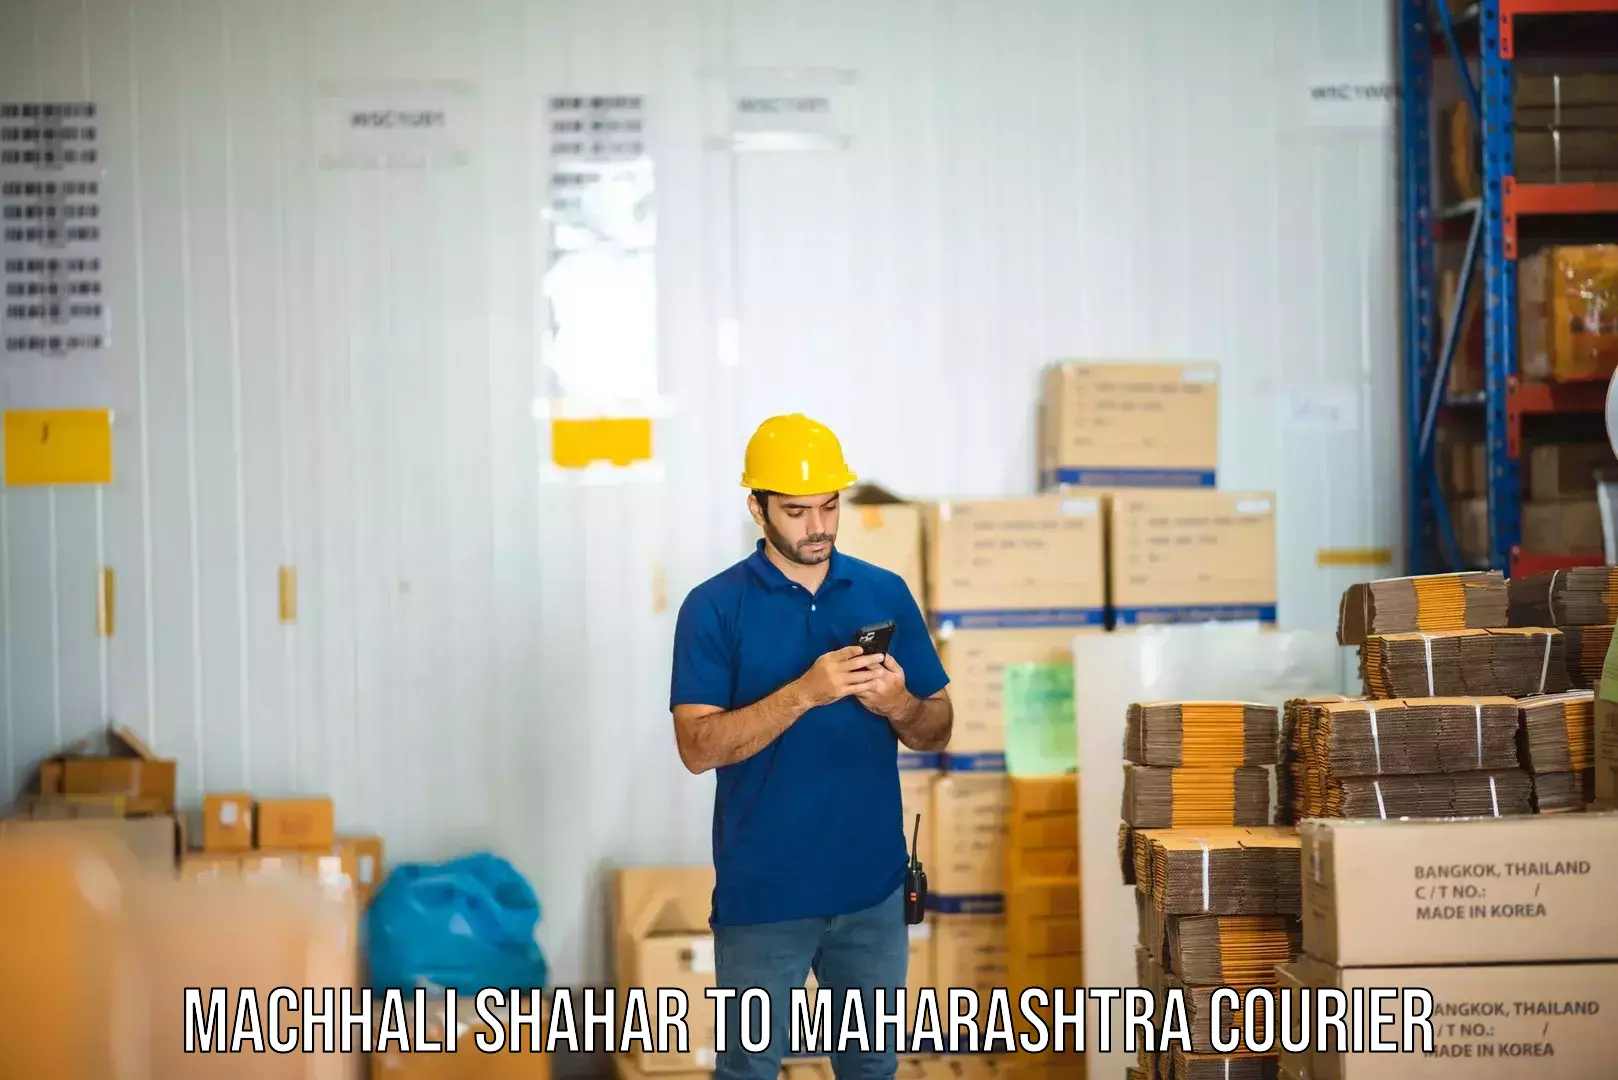 High-speed logistics services Machhali Shahar to Maharashtra